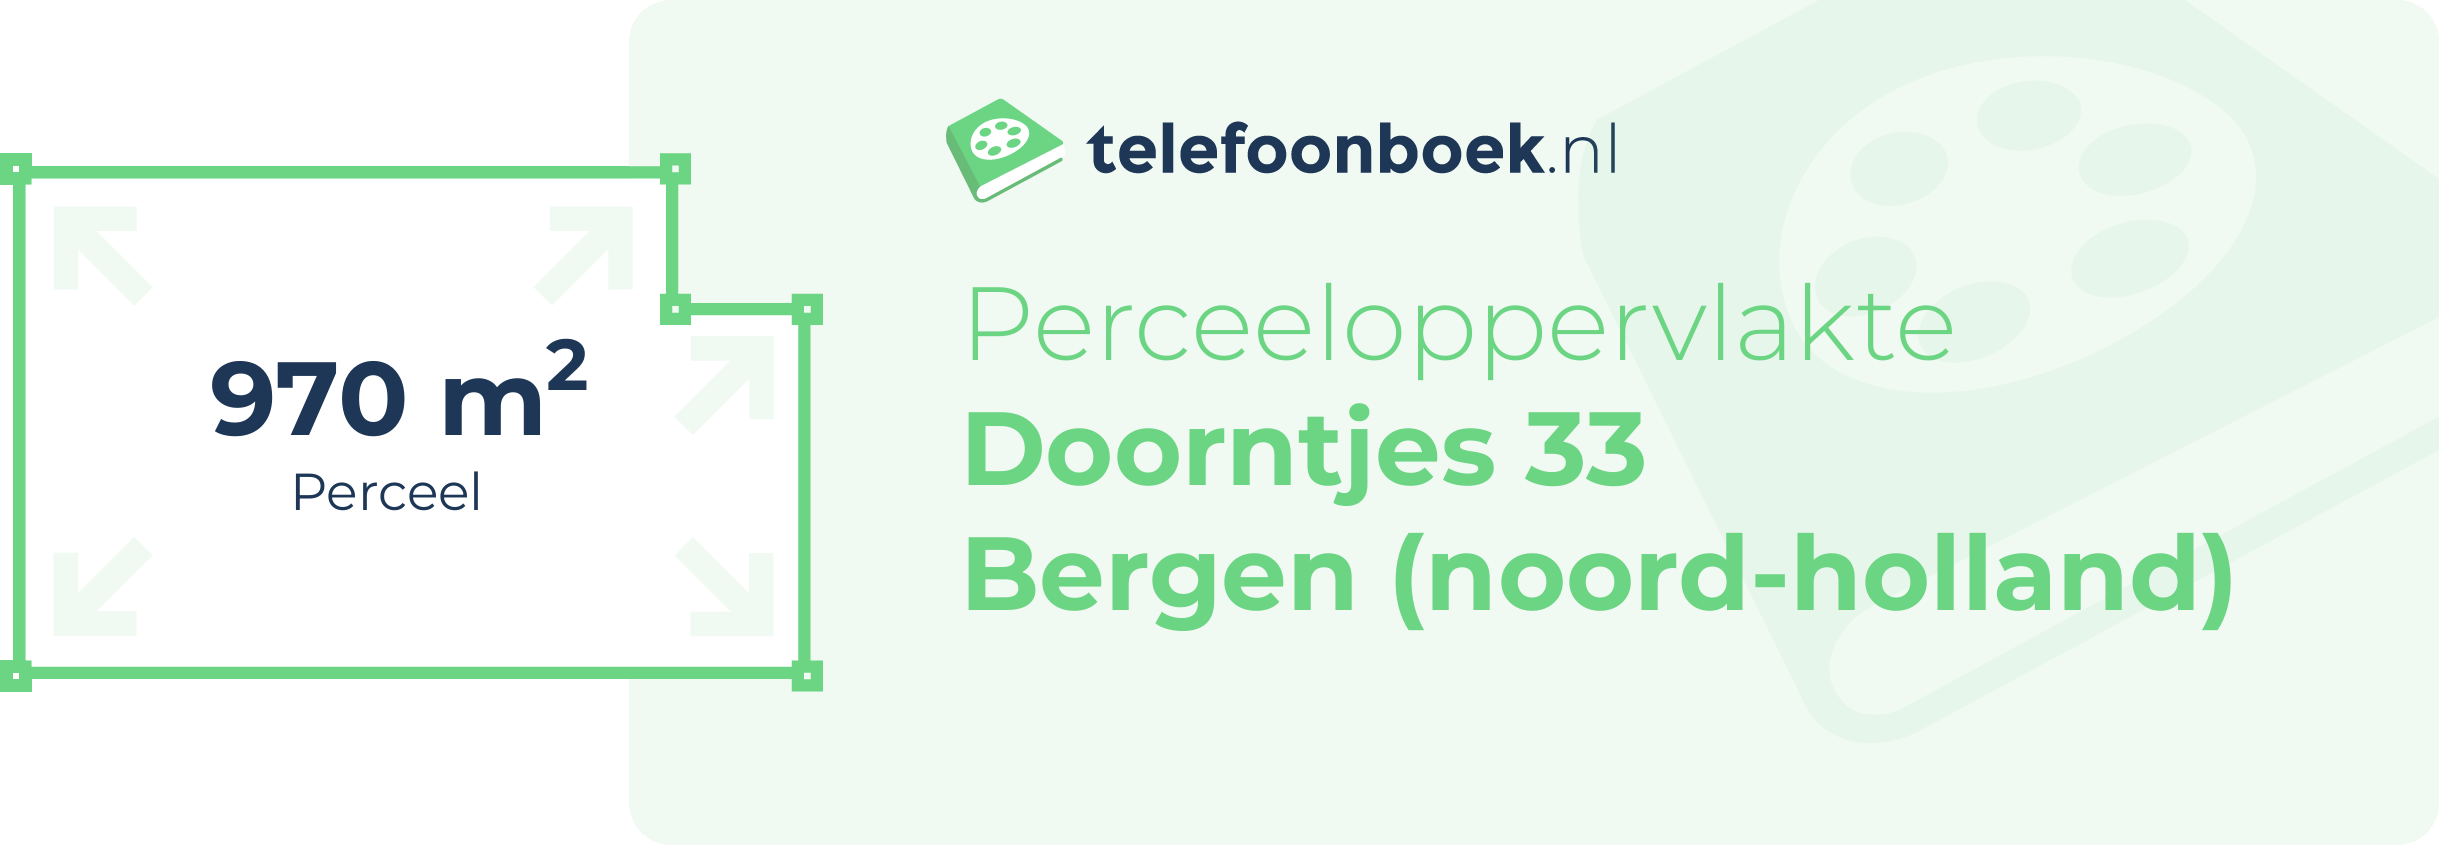 Perceeloppervlakte Doorntjes 33 Bergen (Noord-Holland)